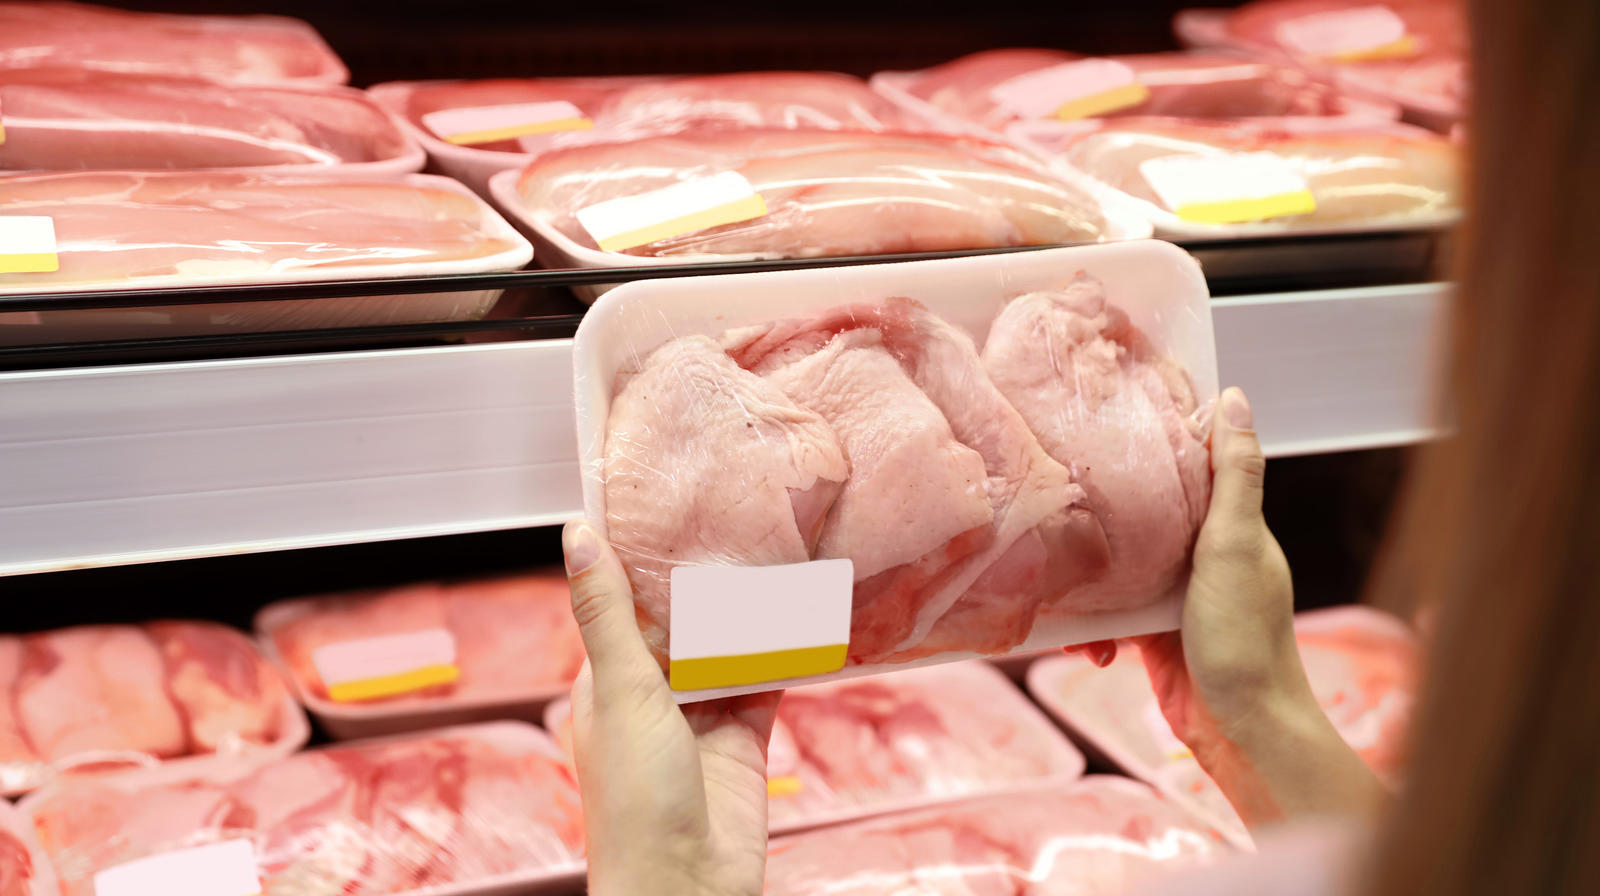 مرغ دوباره گران می شود؟ + آخرین قیمت ها